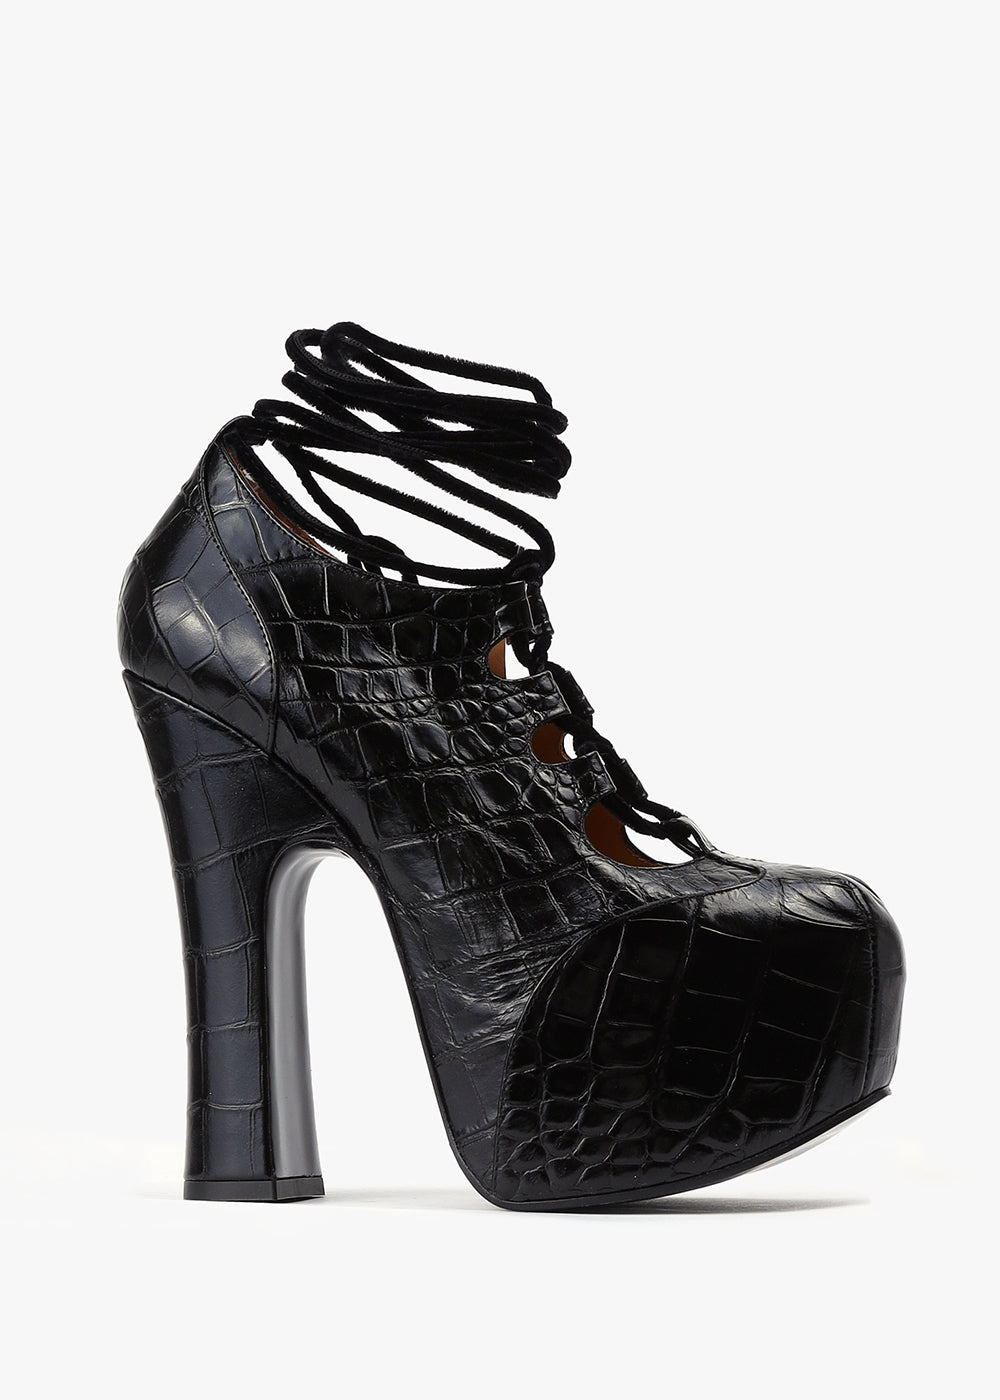 Image of Vivienne Westwood Women's Elevated Platform Black Heels